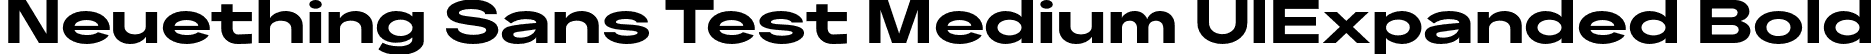 Neuething Sans Test Medium UlExpanded Bold font | NeuethingVariableTest-BoldUltraExpanded.otf